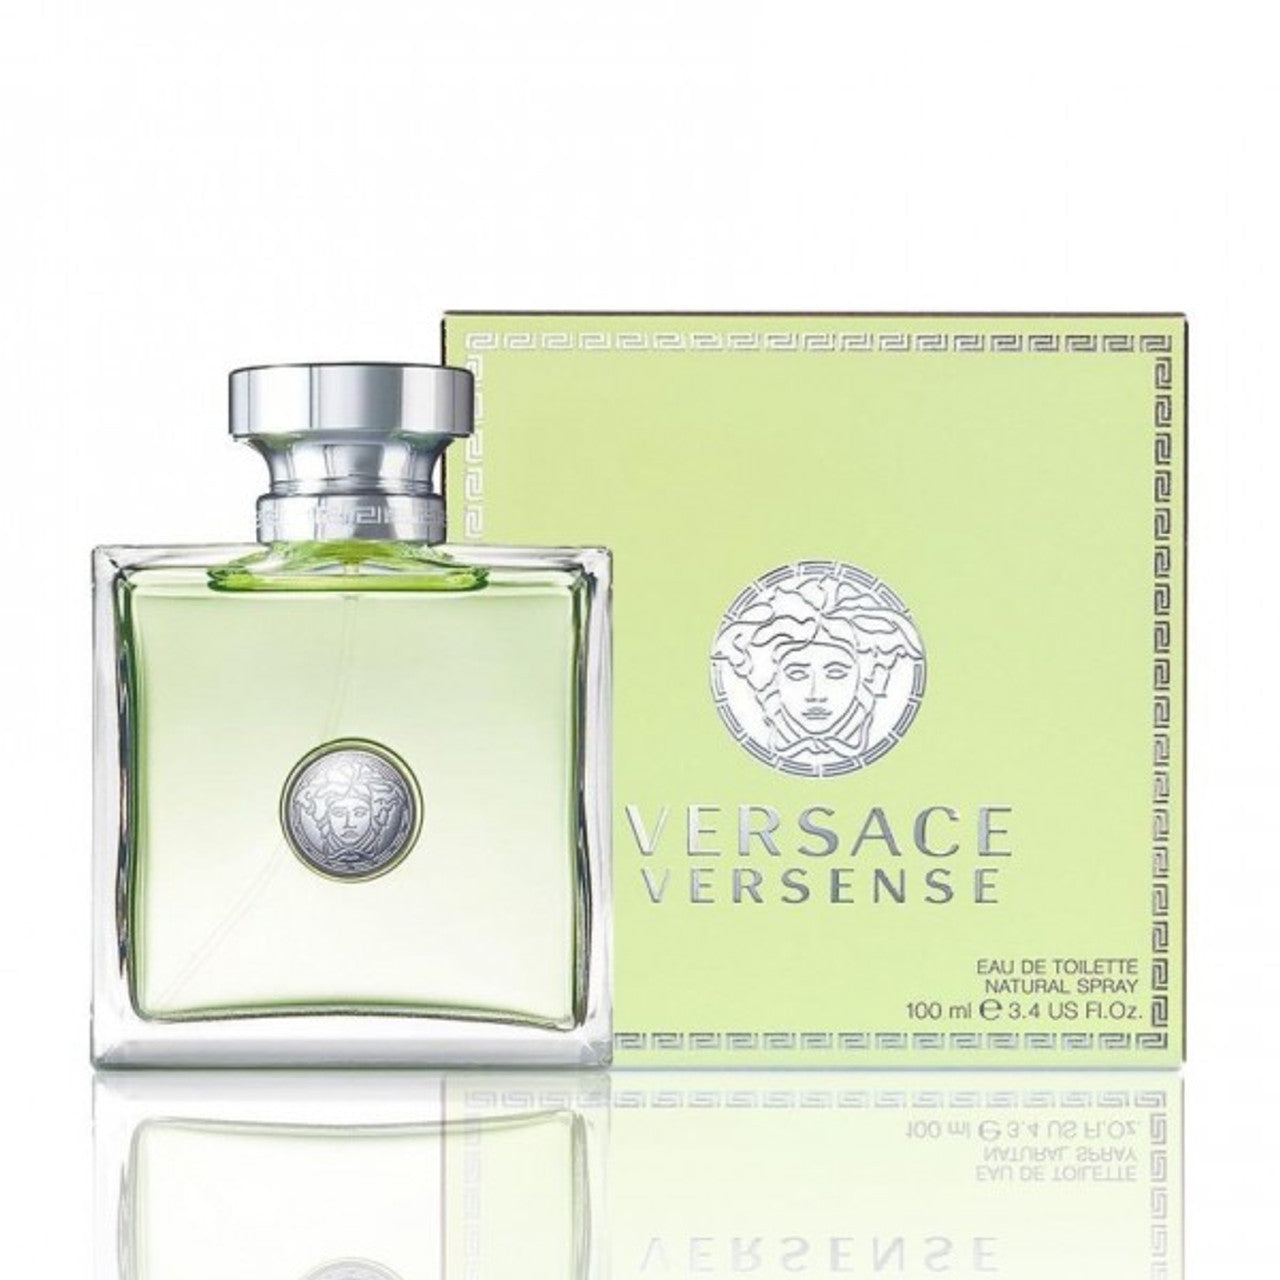 Versace Vercense For Women 3.4 oz Eau De Toilette Spray